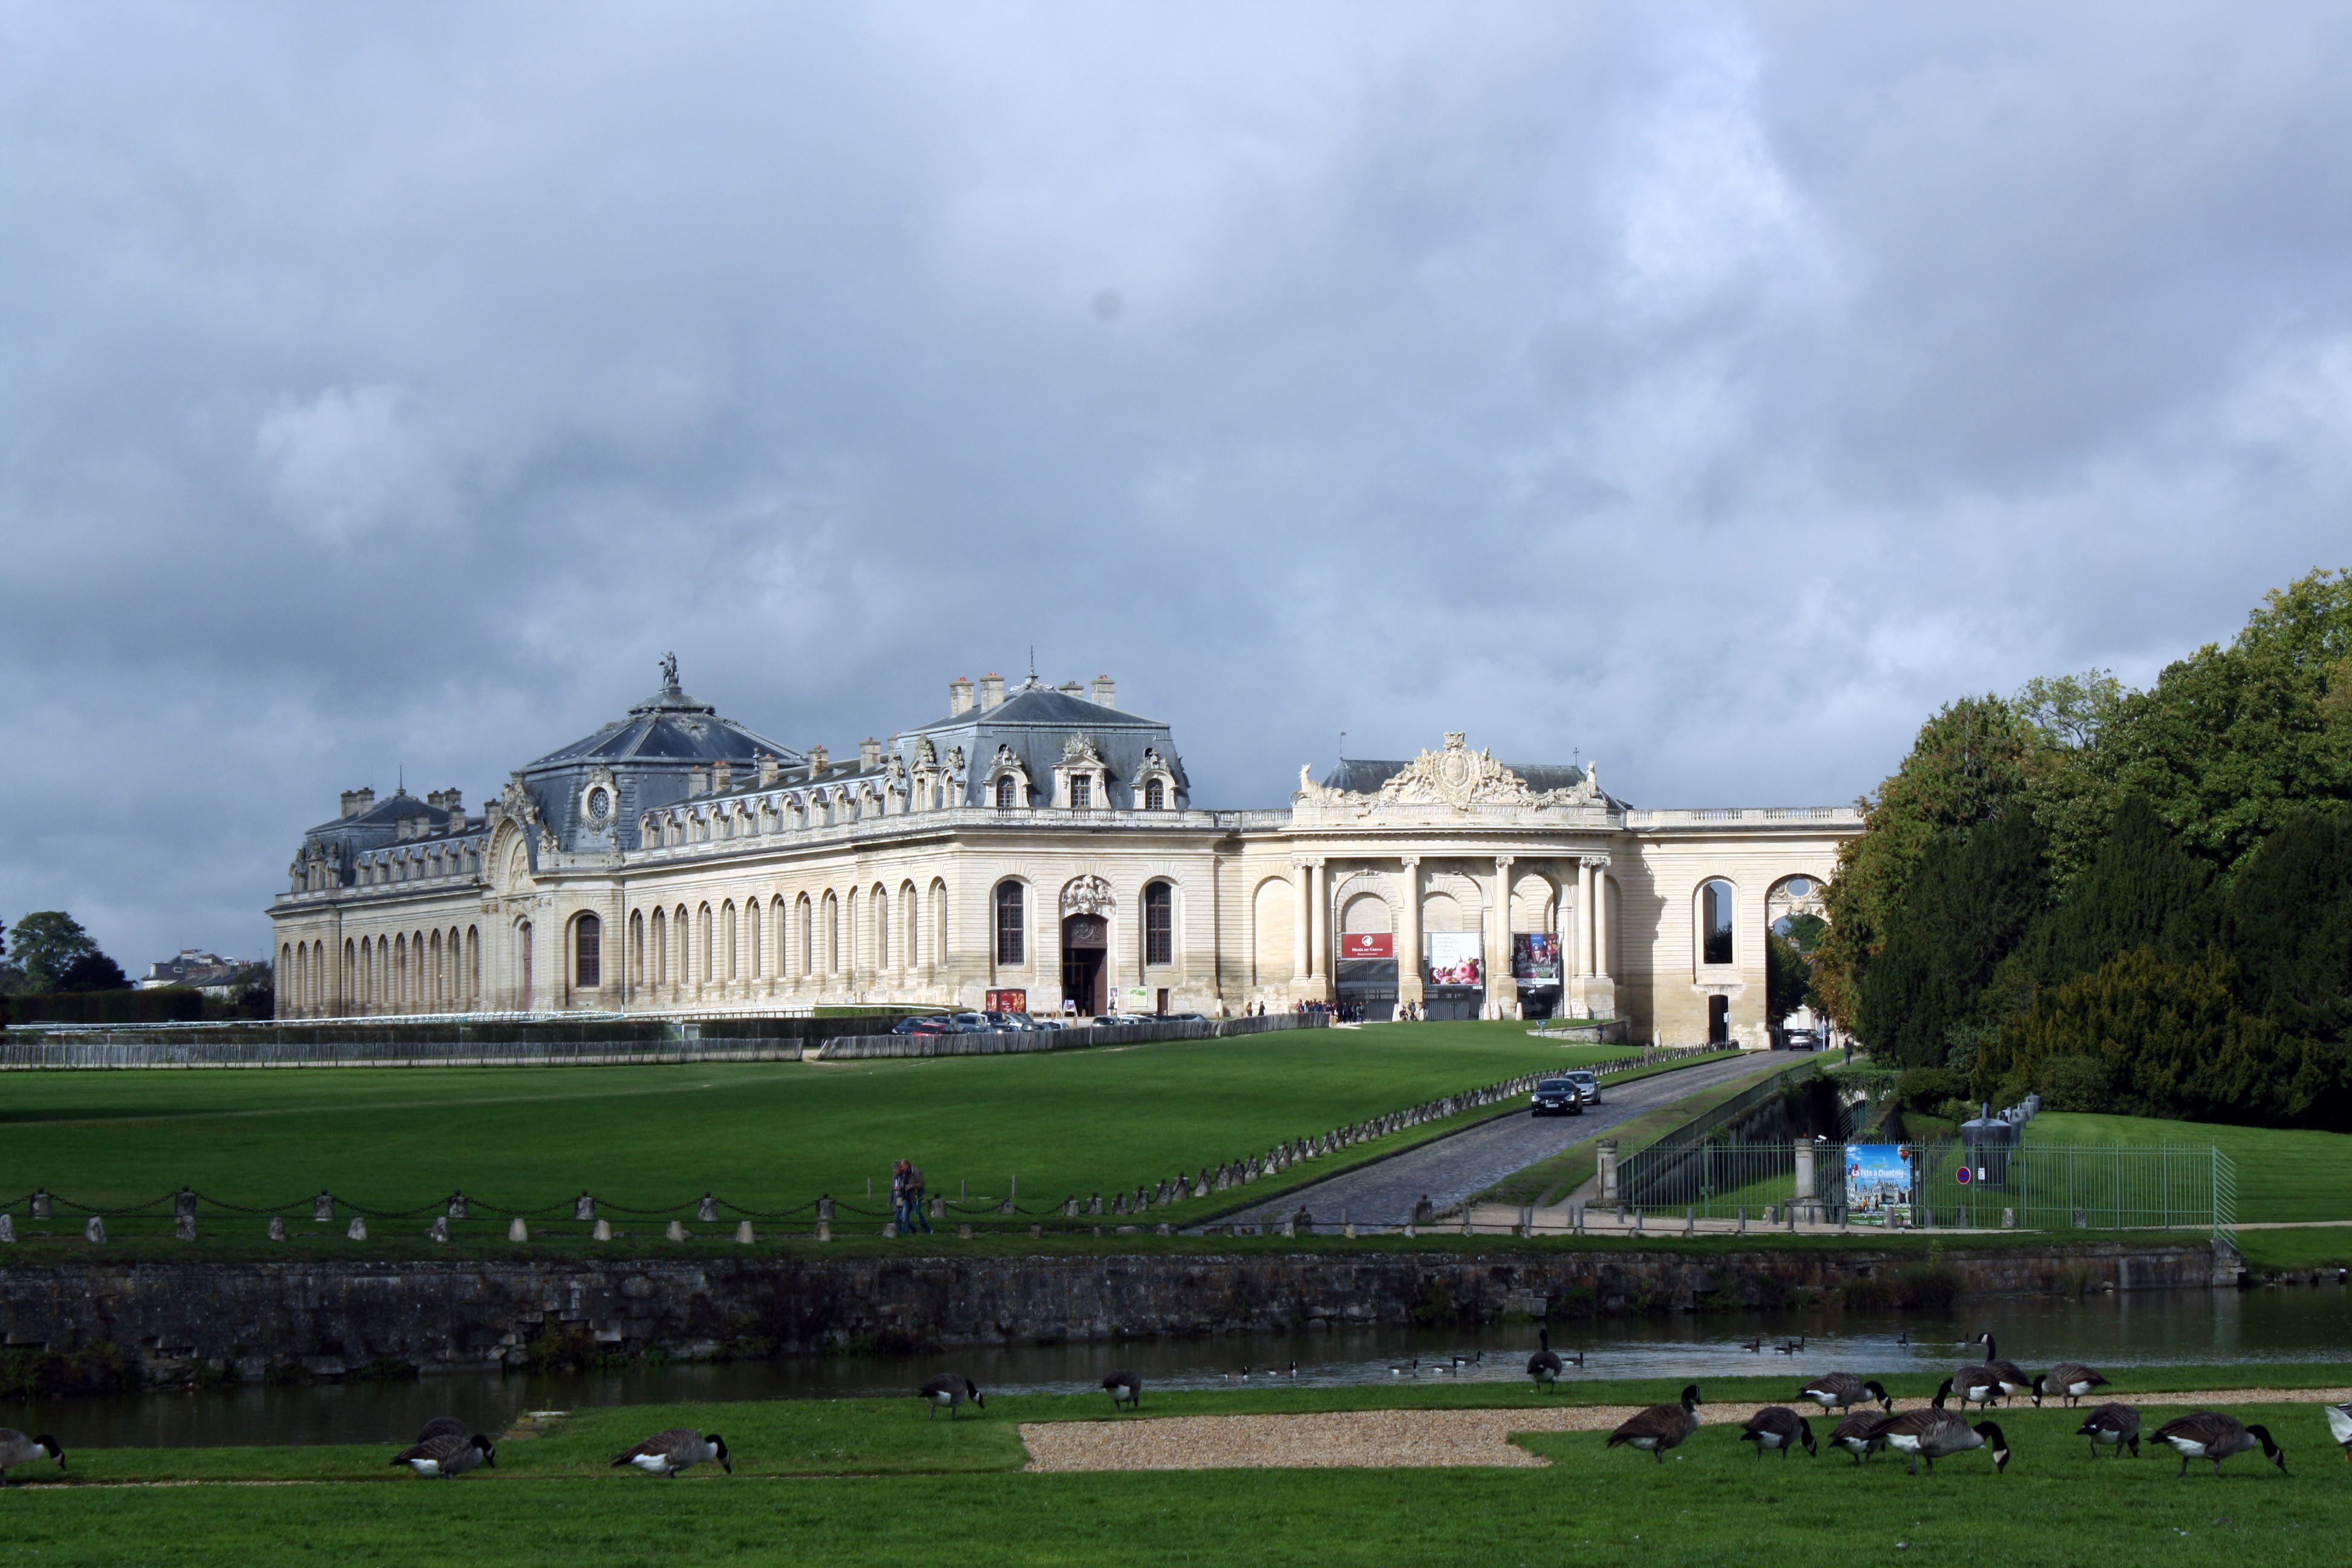 7 Tipps für die Picardie http://wp.me/p6m12C-dd #france #picardie #chantilly